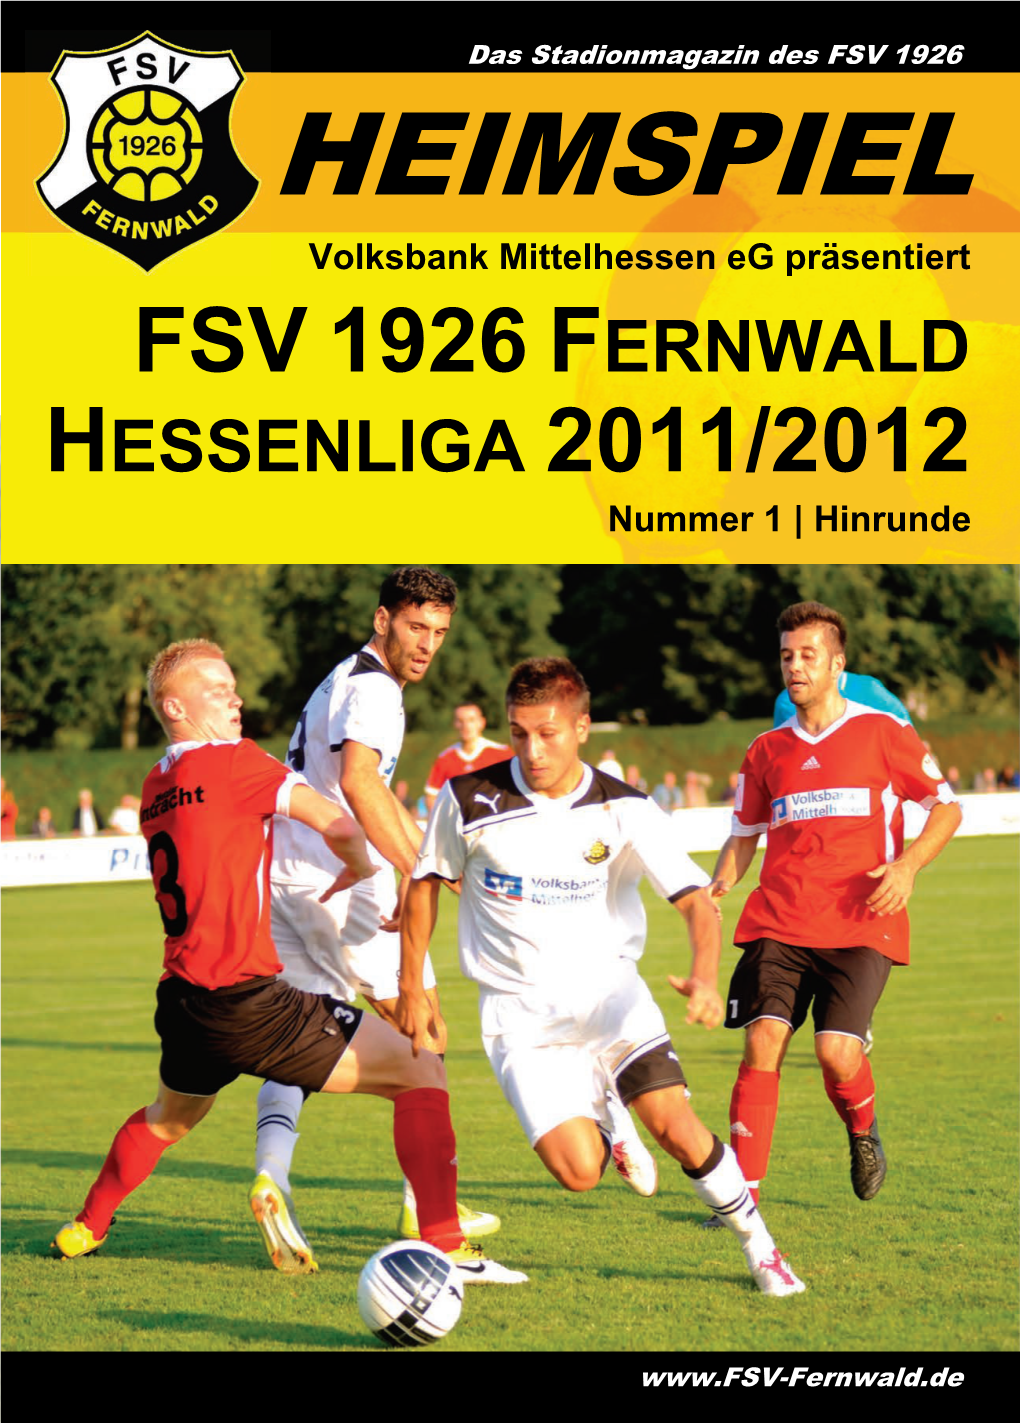 Fsv 1926 Fernwald Hessenliga 2011/2012